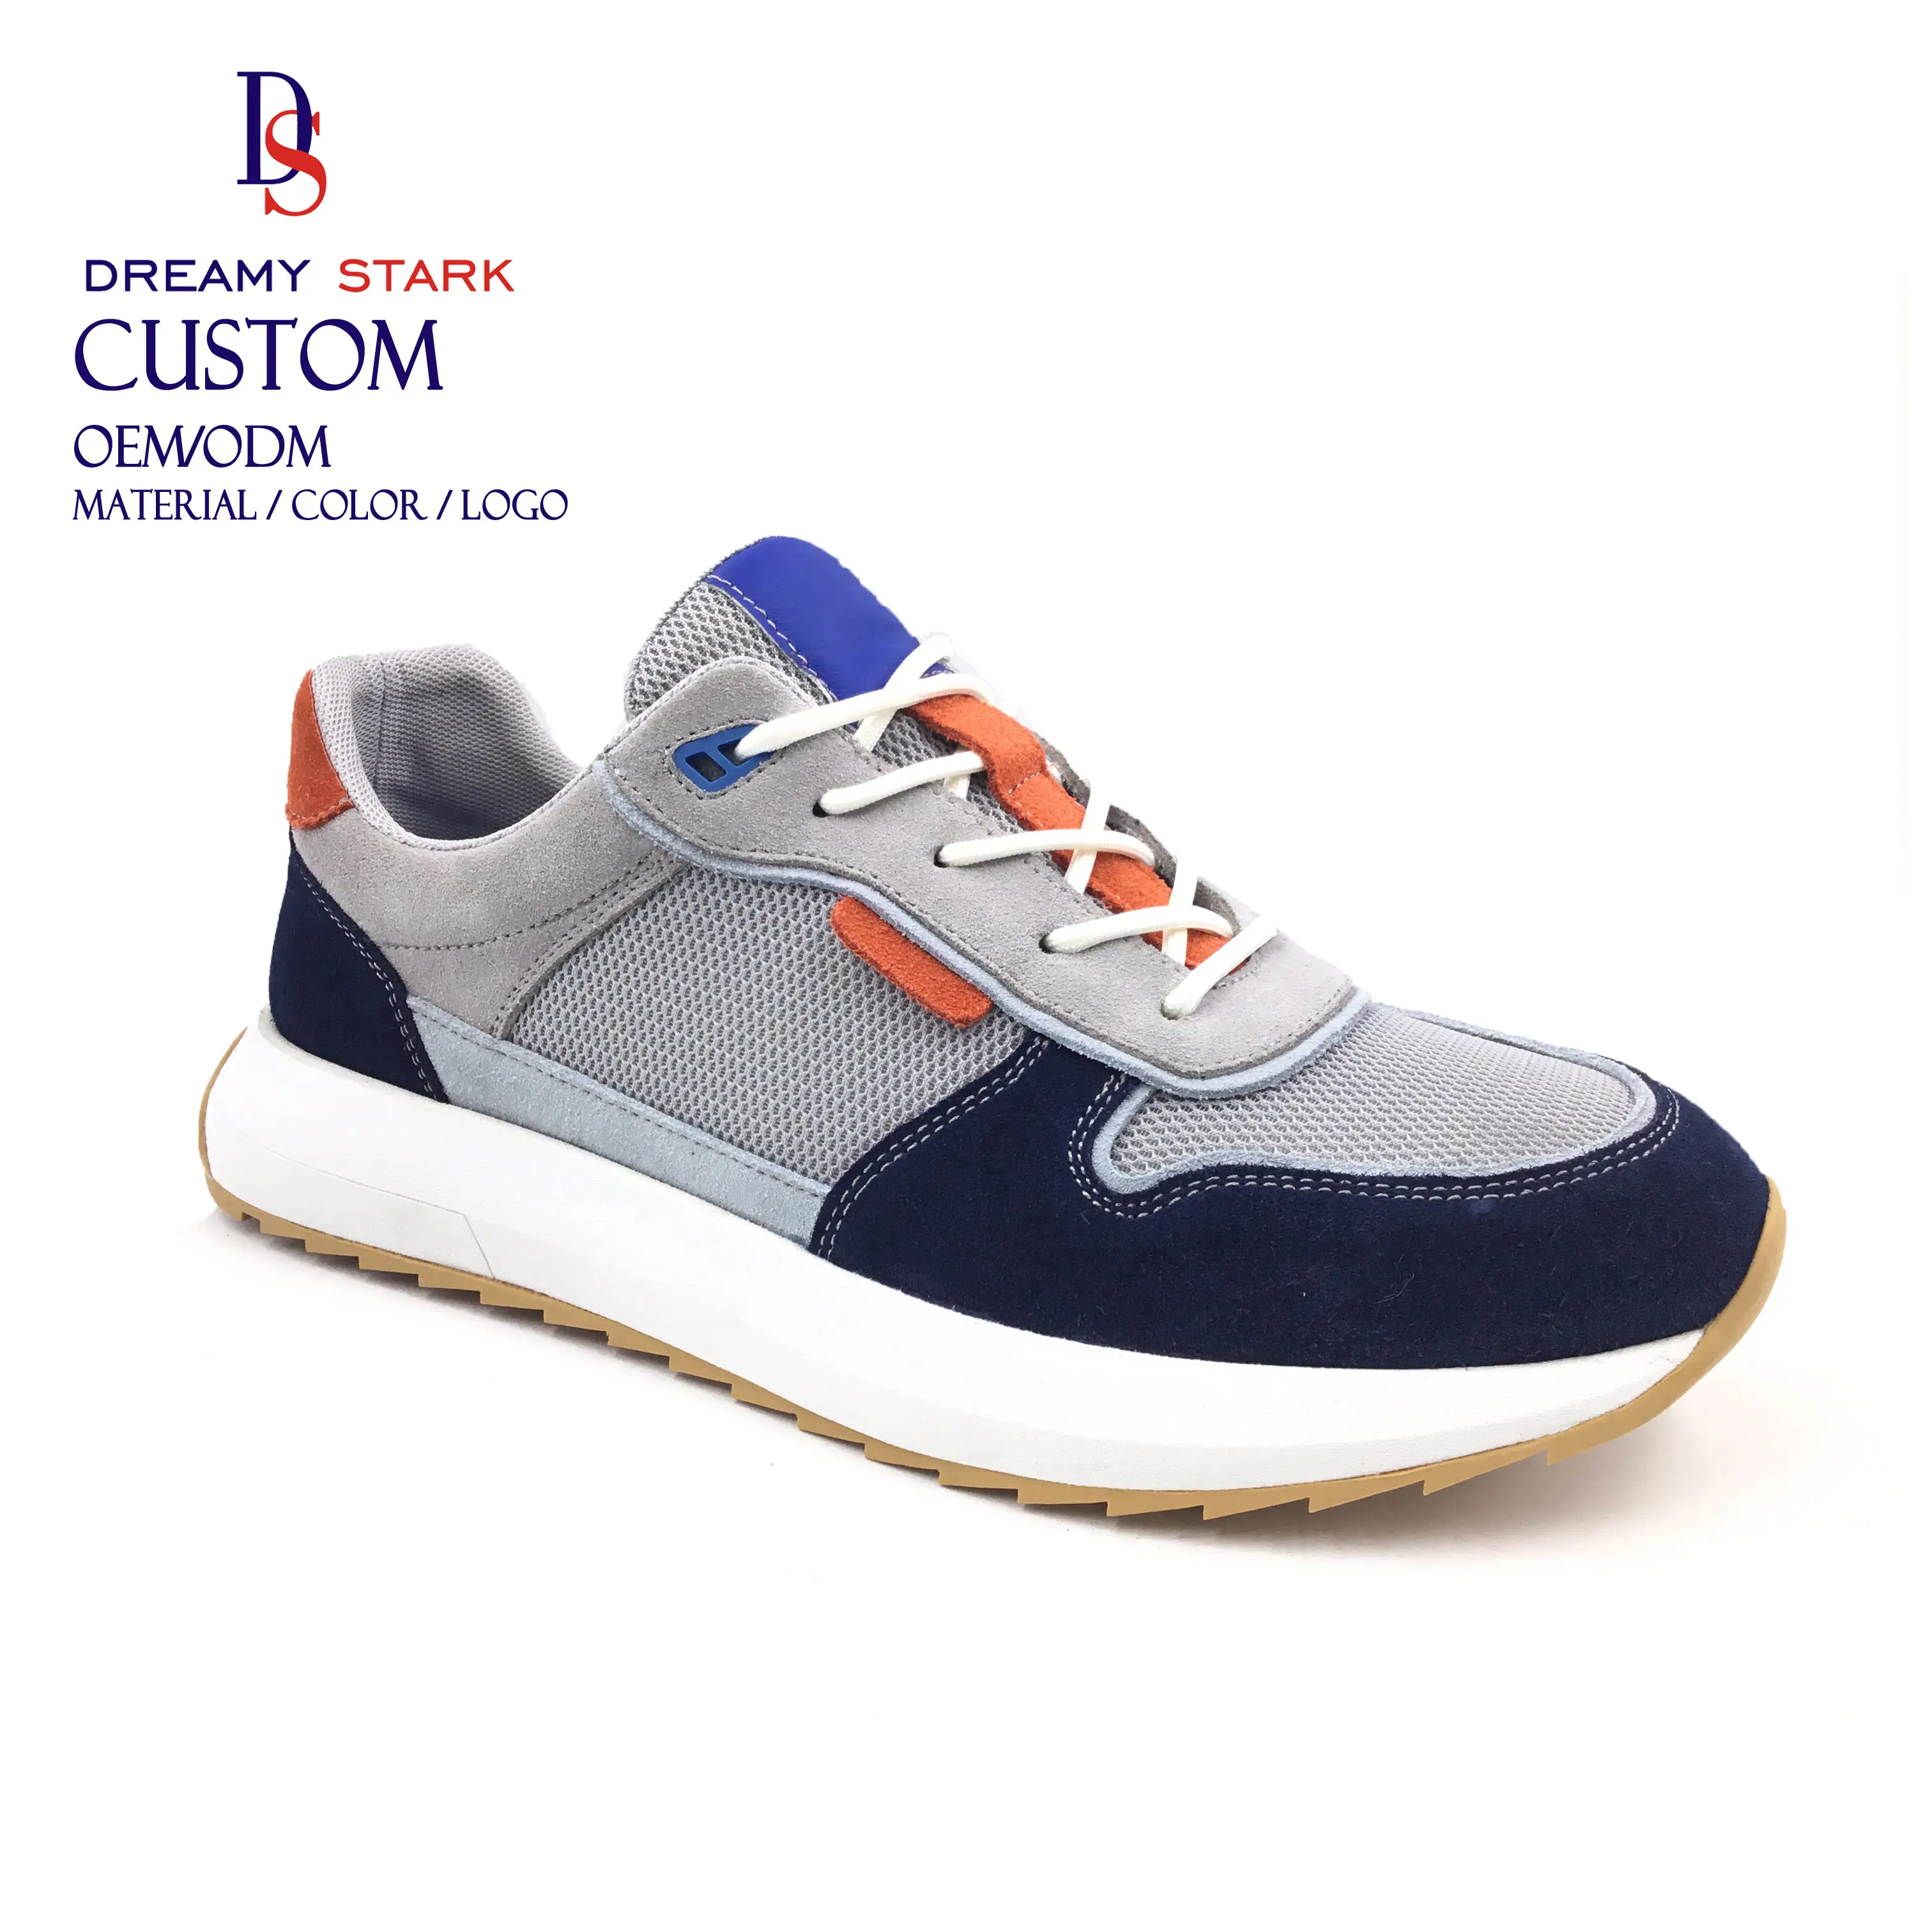 Dreamy Stark Shoe Fabricación color personalizado Superventas Zapatillas de deporte casuales de cuero genuino para hombres Zapatos deportivos personalizados para hombres